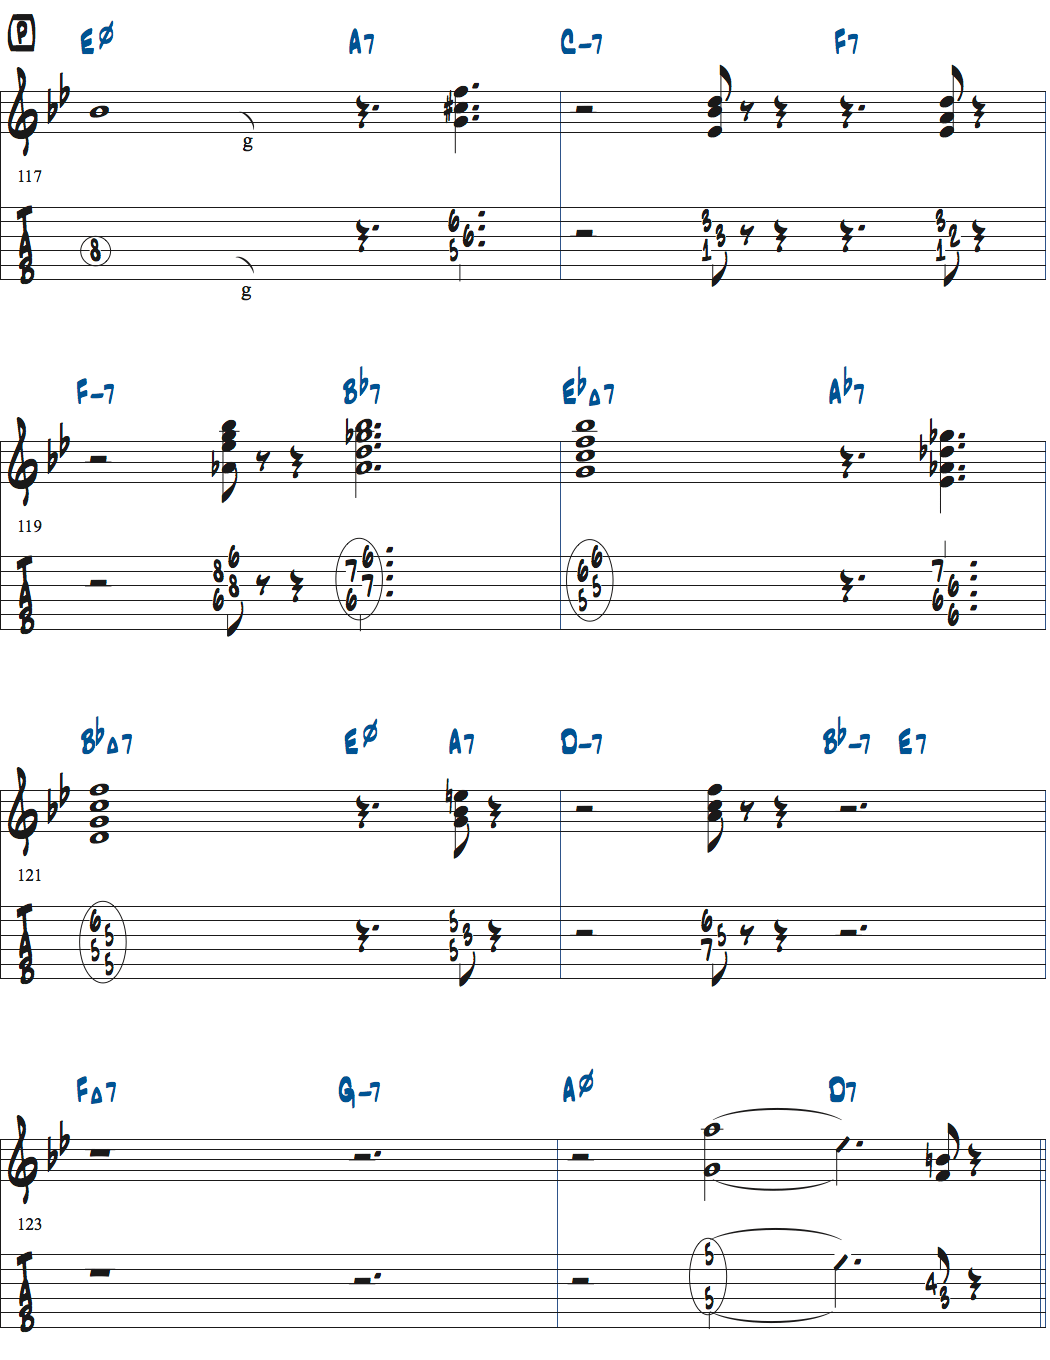 ジョナサン・クライスバーグの星影のステラベースソロのコンピング楽譜ページ1